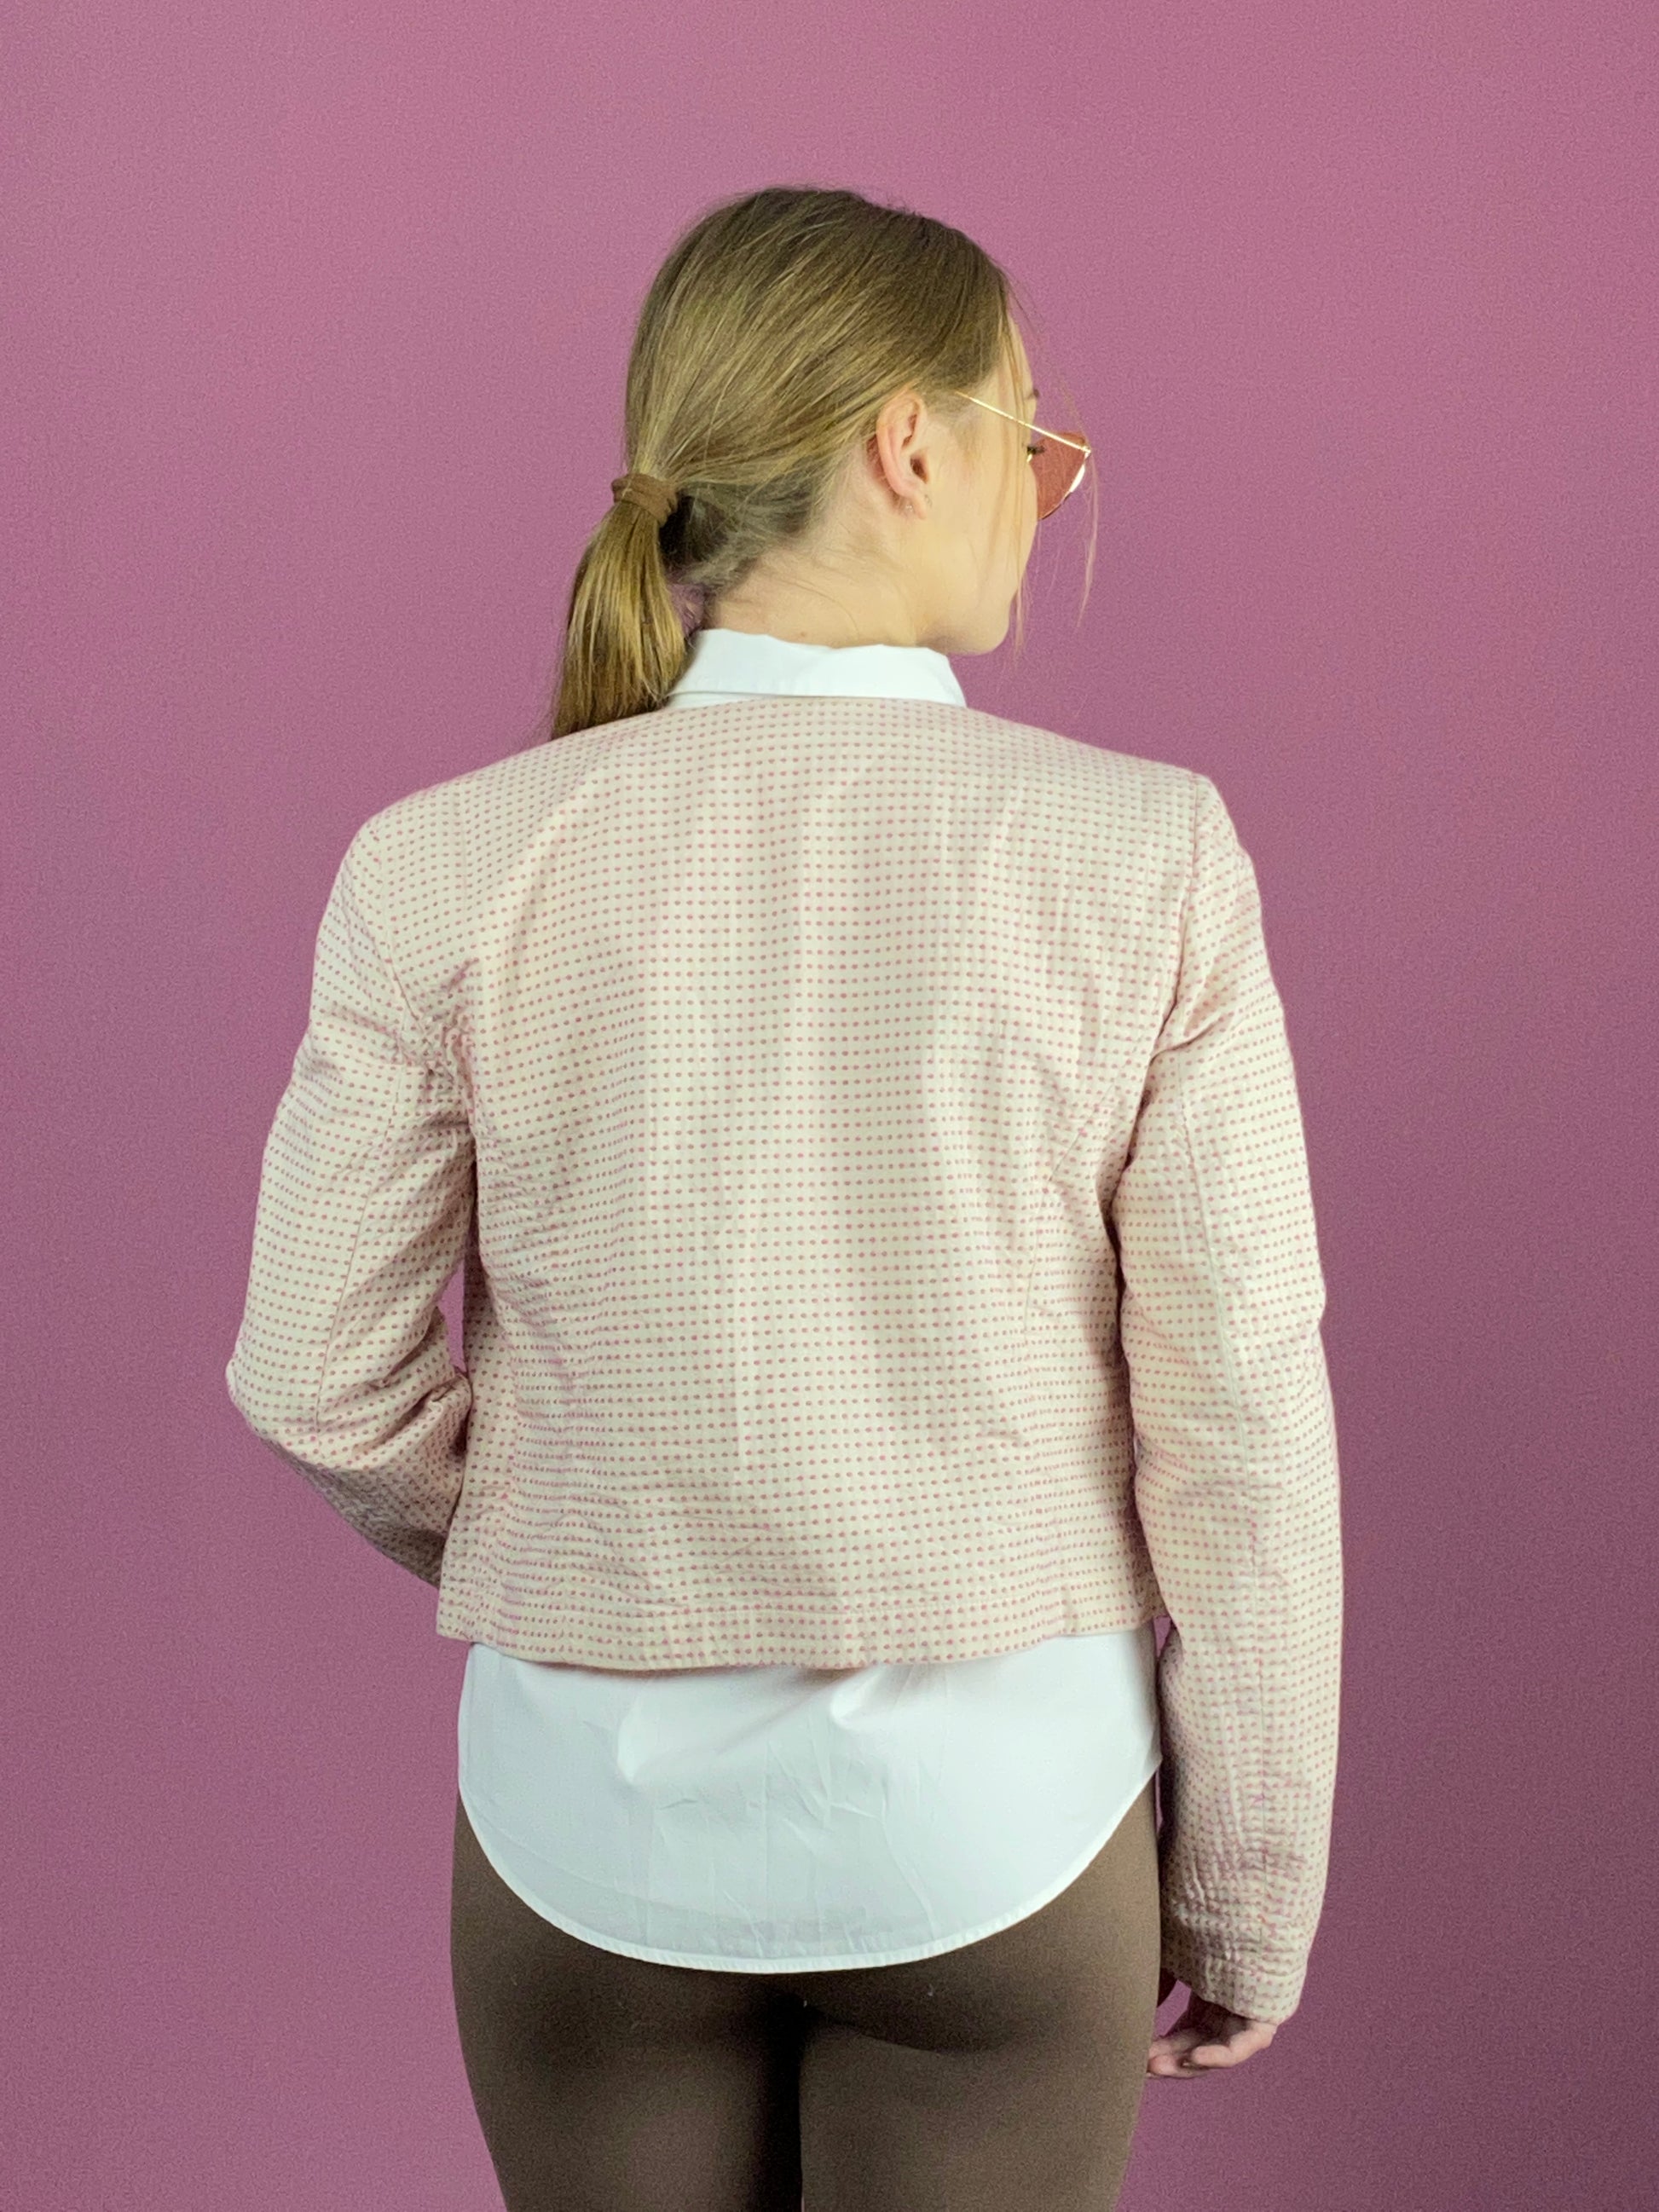 Armani Jeans Vintage Women's Polka Dot Blazer Jacket - Large Pink Cotton